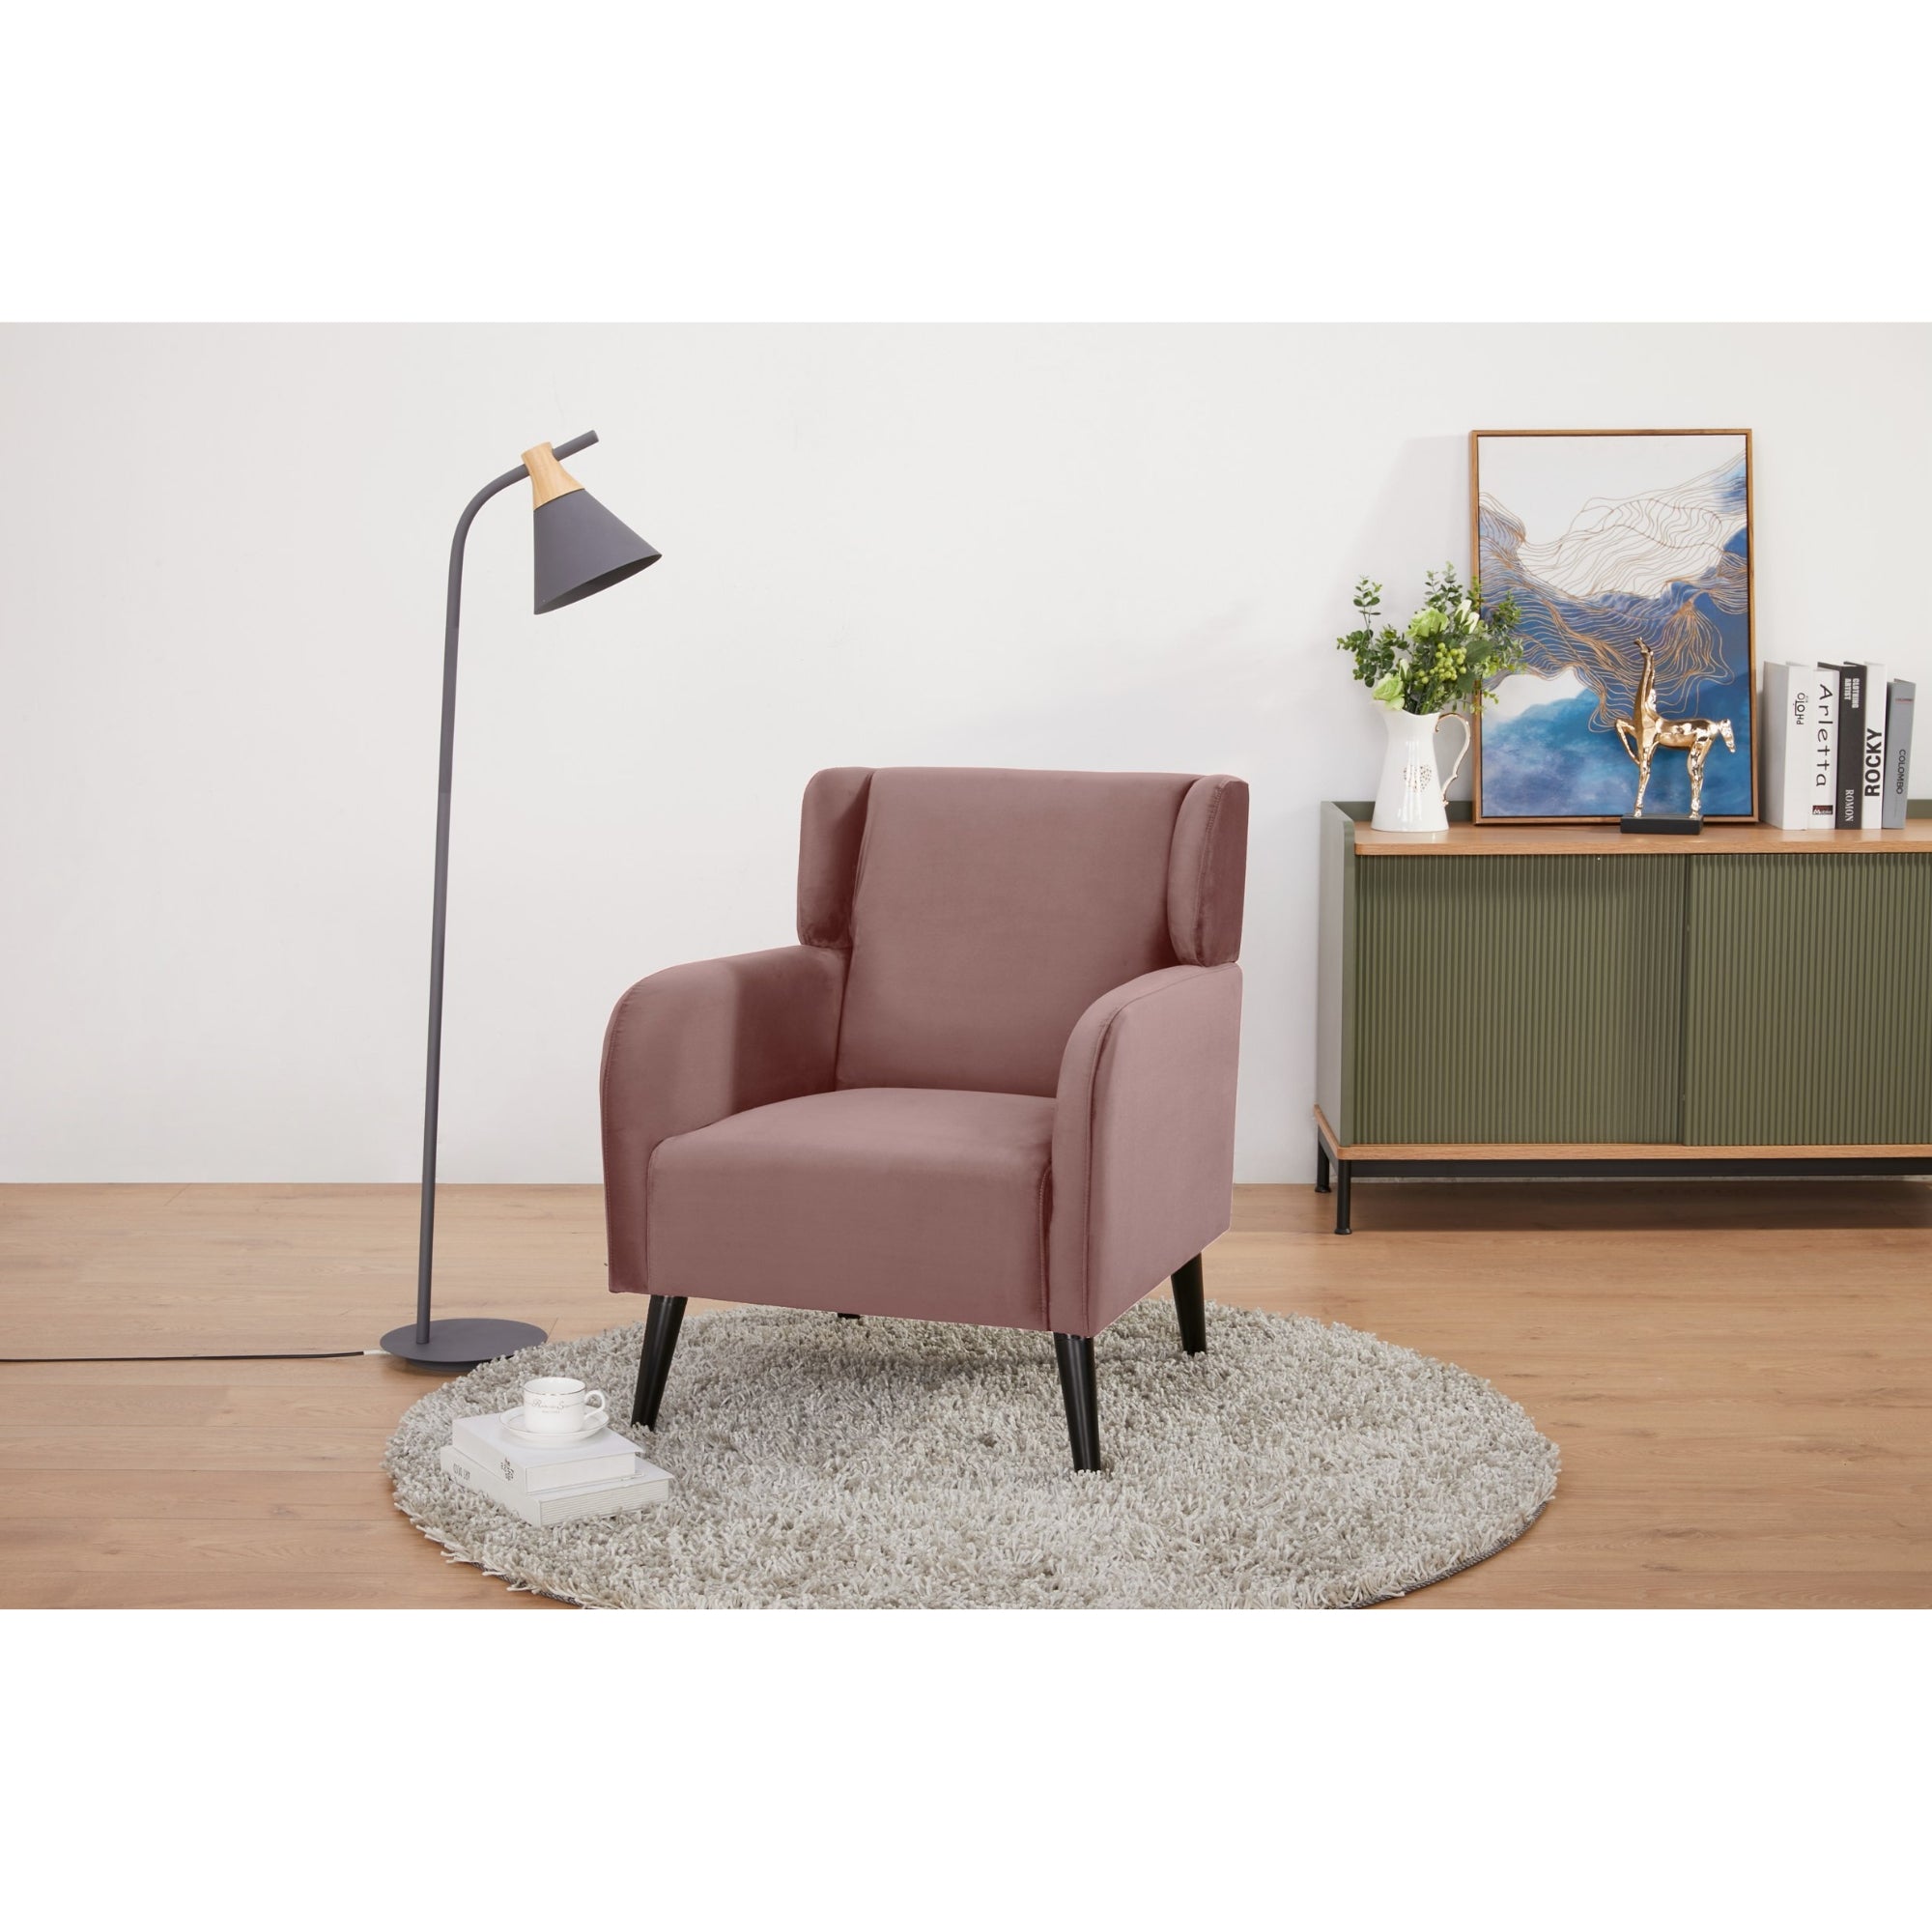 Pink Scandinavian Accent Arm Chair, High-Density Foam